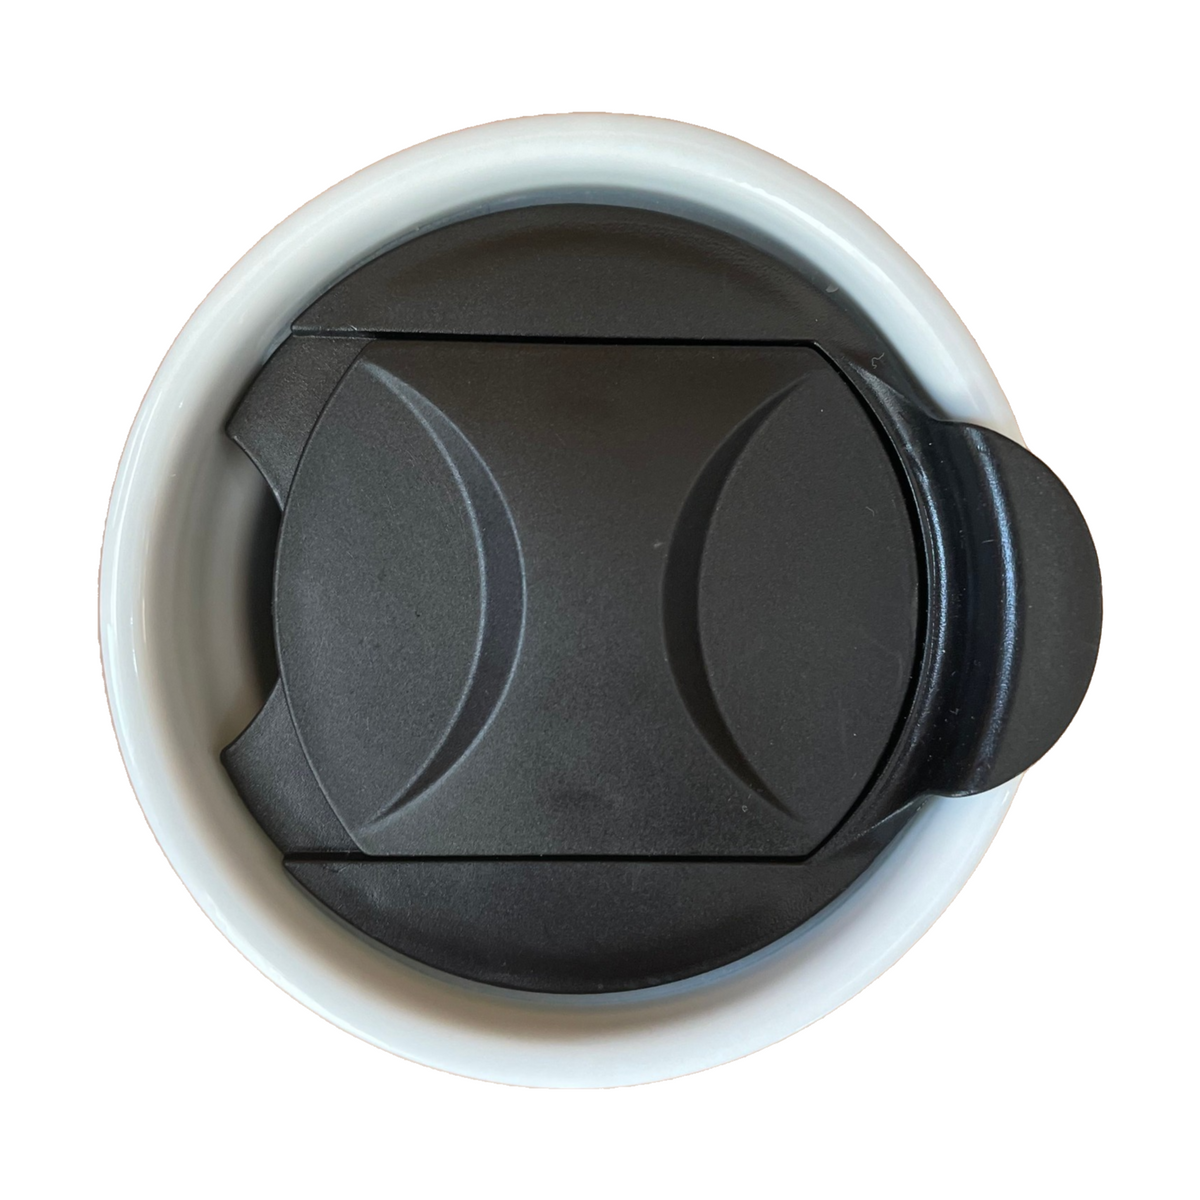 MIE Replacement Lid for Coffee Mug & Tea Cup - Competible With Starbucks  Ceramic Travel Mug 10oz / 12oz / 16oz, Tumbler Lid, Mug Lid, Cup Lid (Light